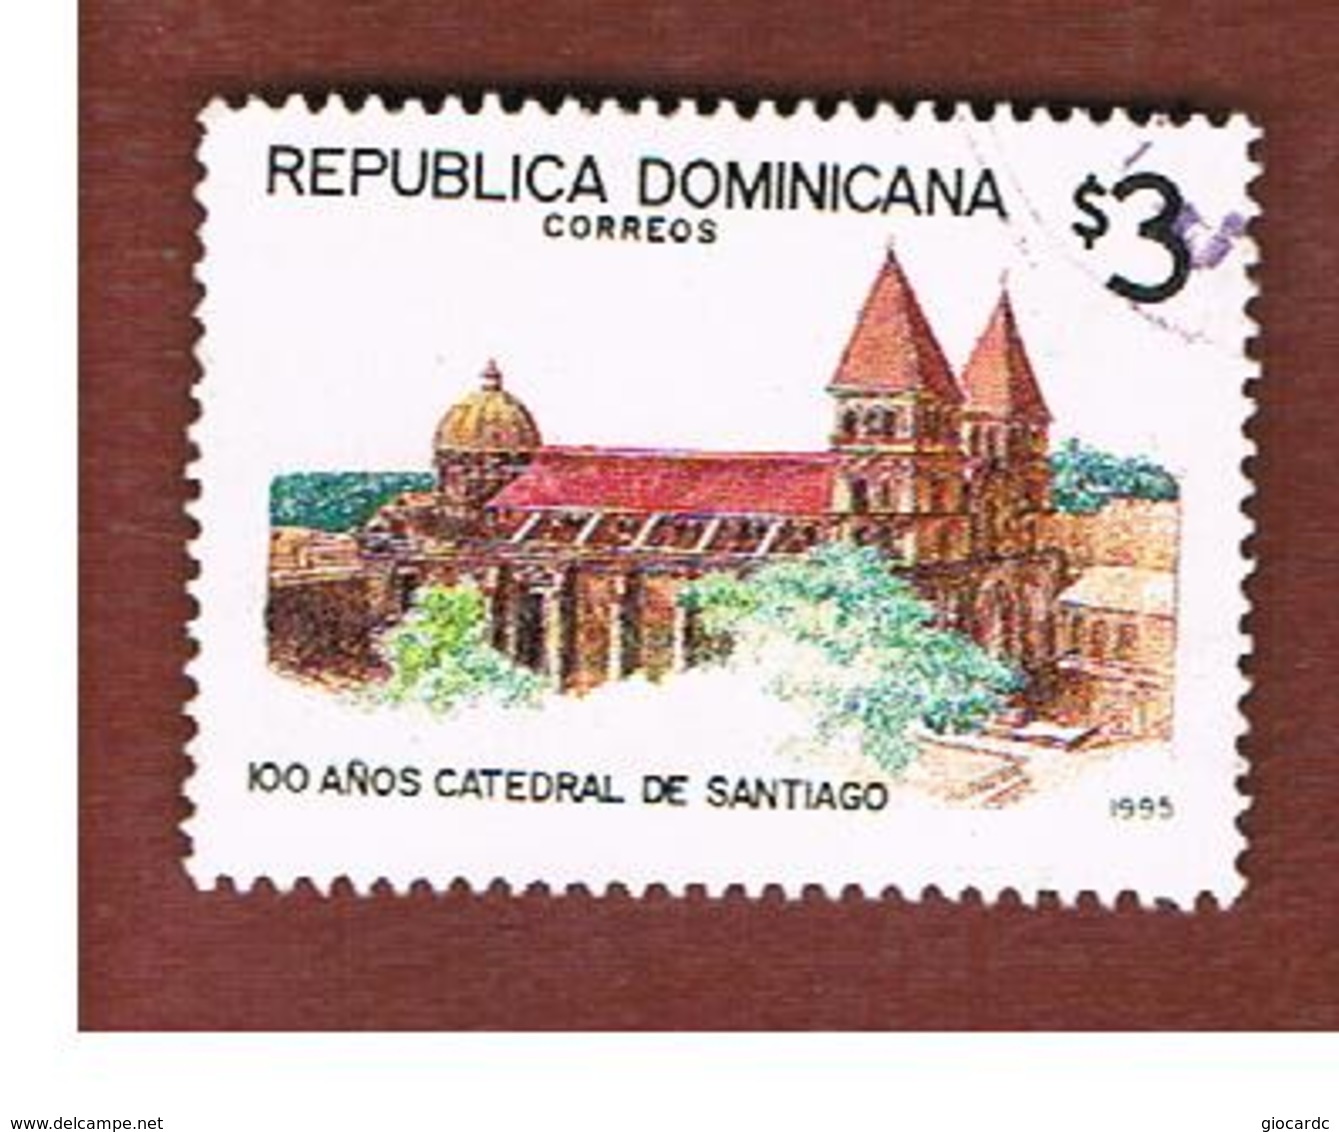 REPUBBLICA DOMENICANA (DOMINICAN REPUBLIC)  - SG 1922  -  1995  SANTIAGO CATHEDRAL       - USED - Repubblica Domenicana